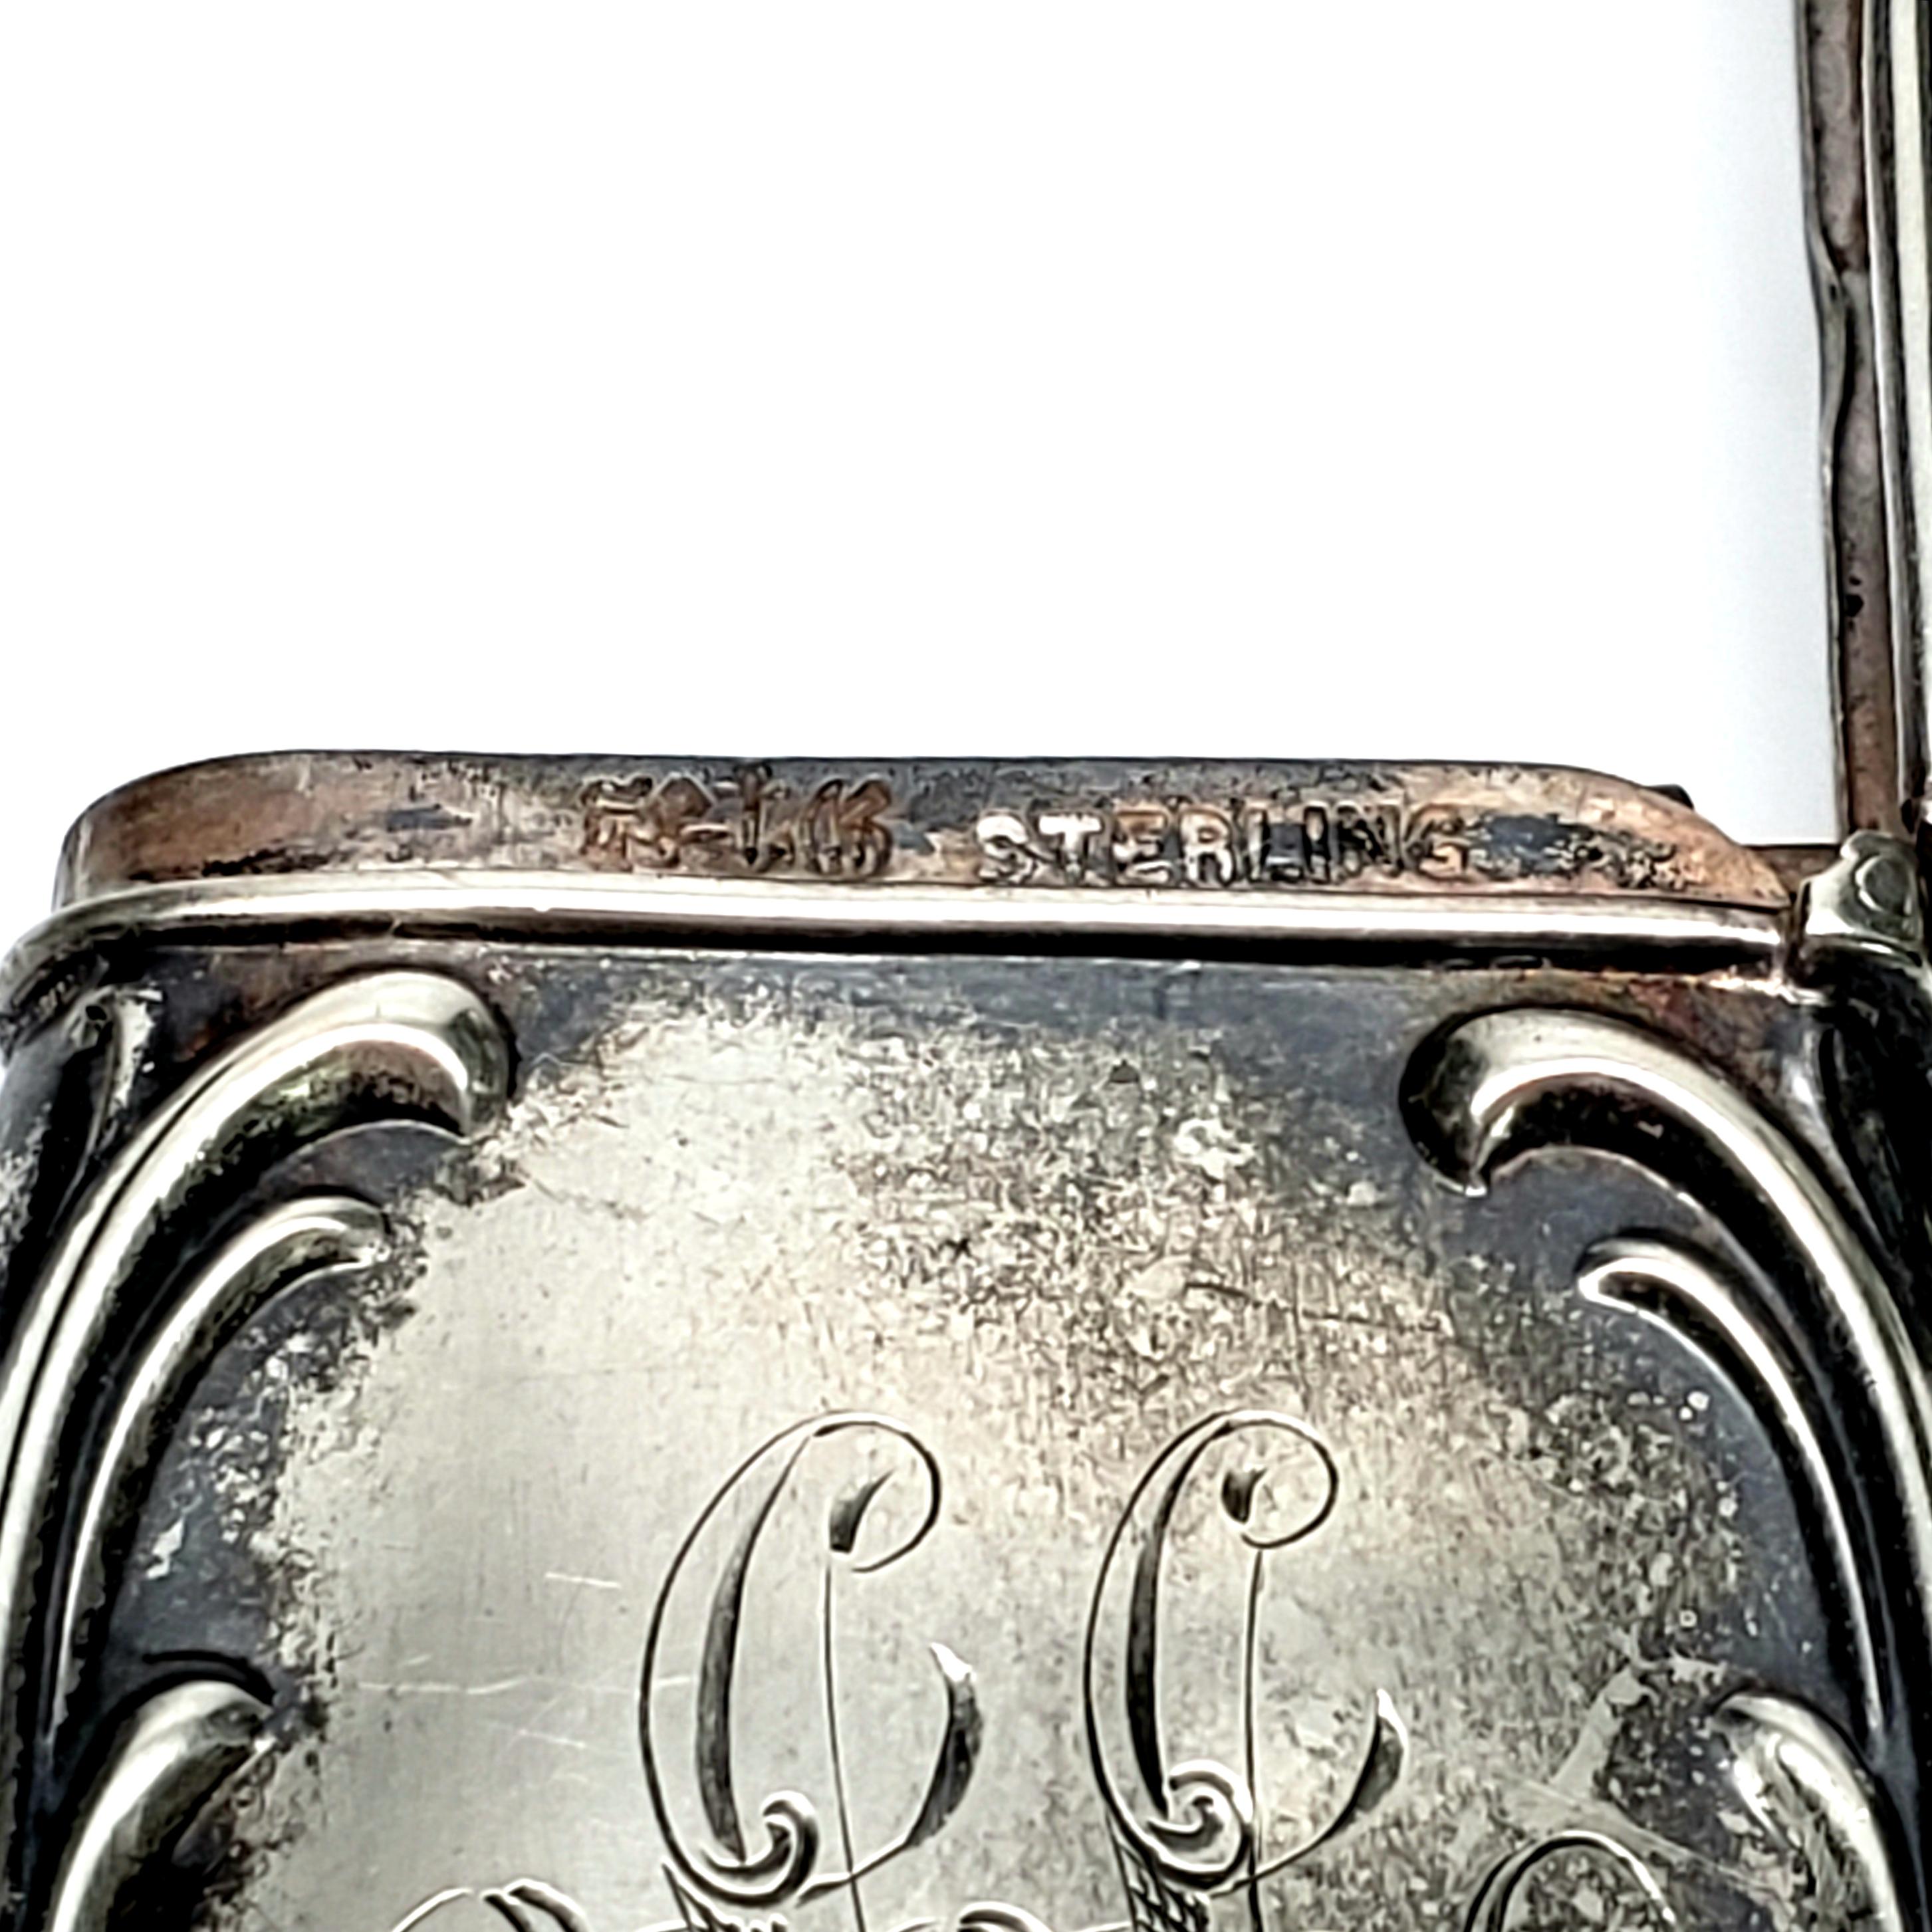 Women's Gorham Silver Match Safe/Vesta Case with Monogram